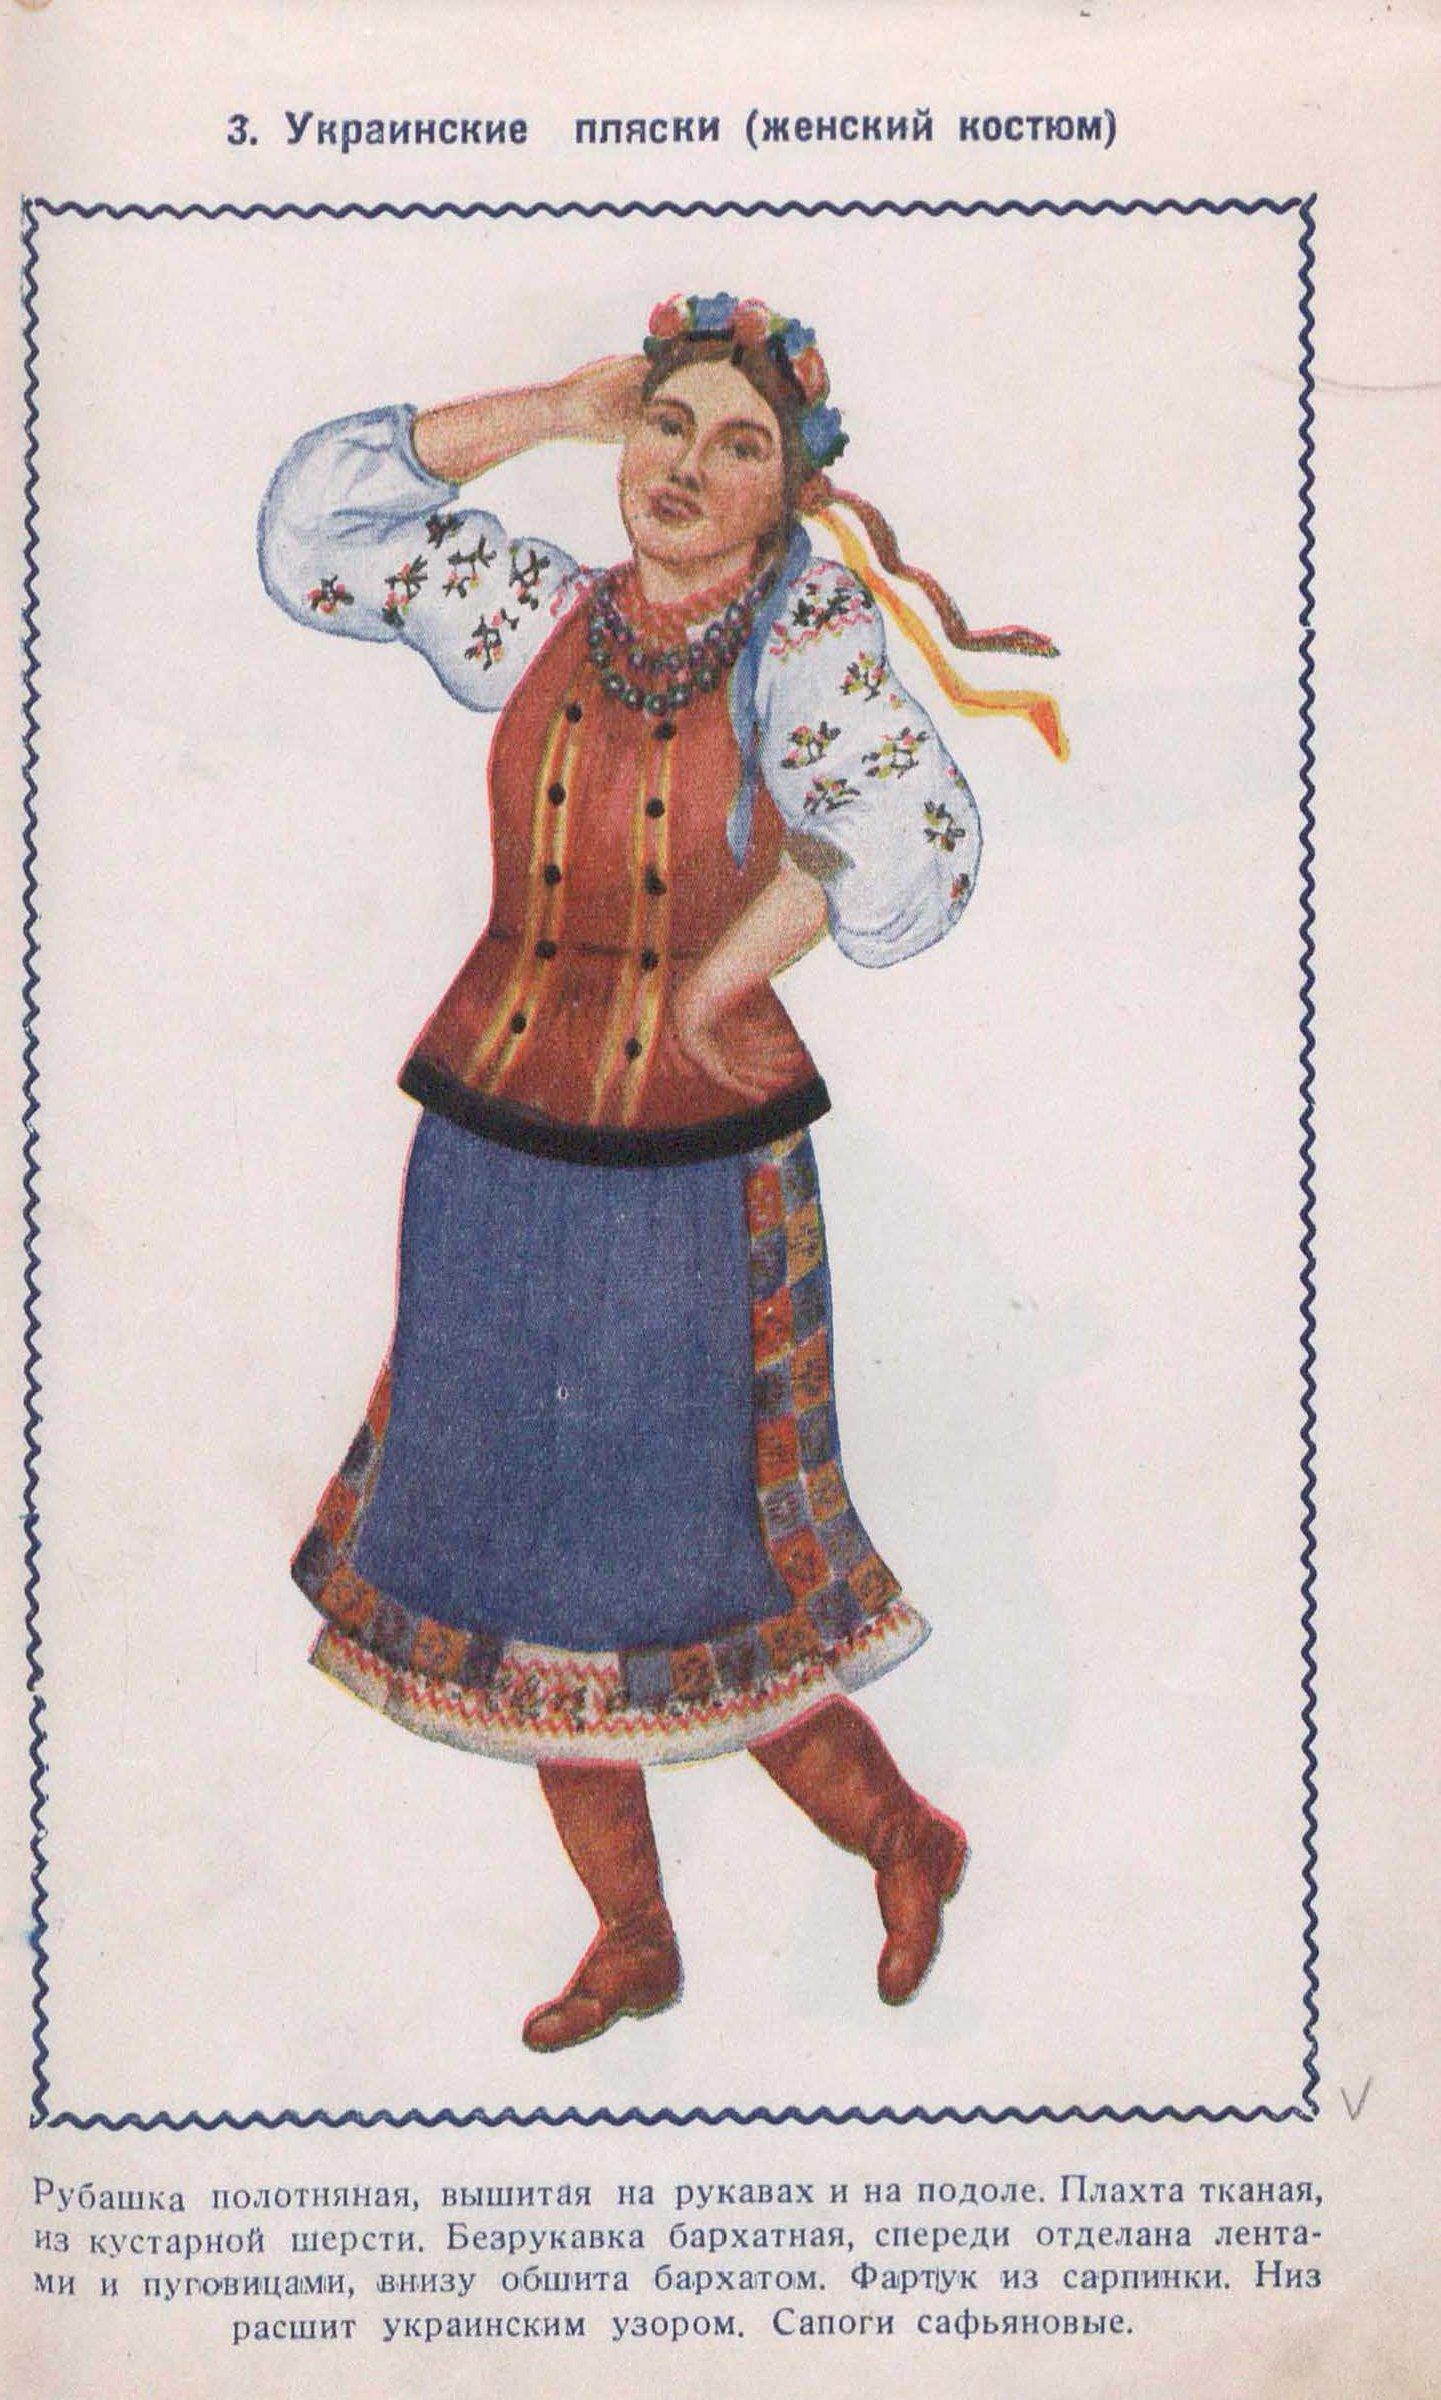 Украинские пляски (женский костюм)